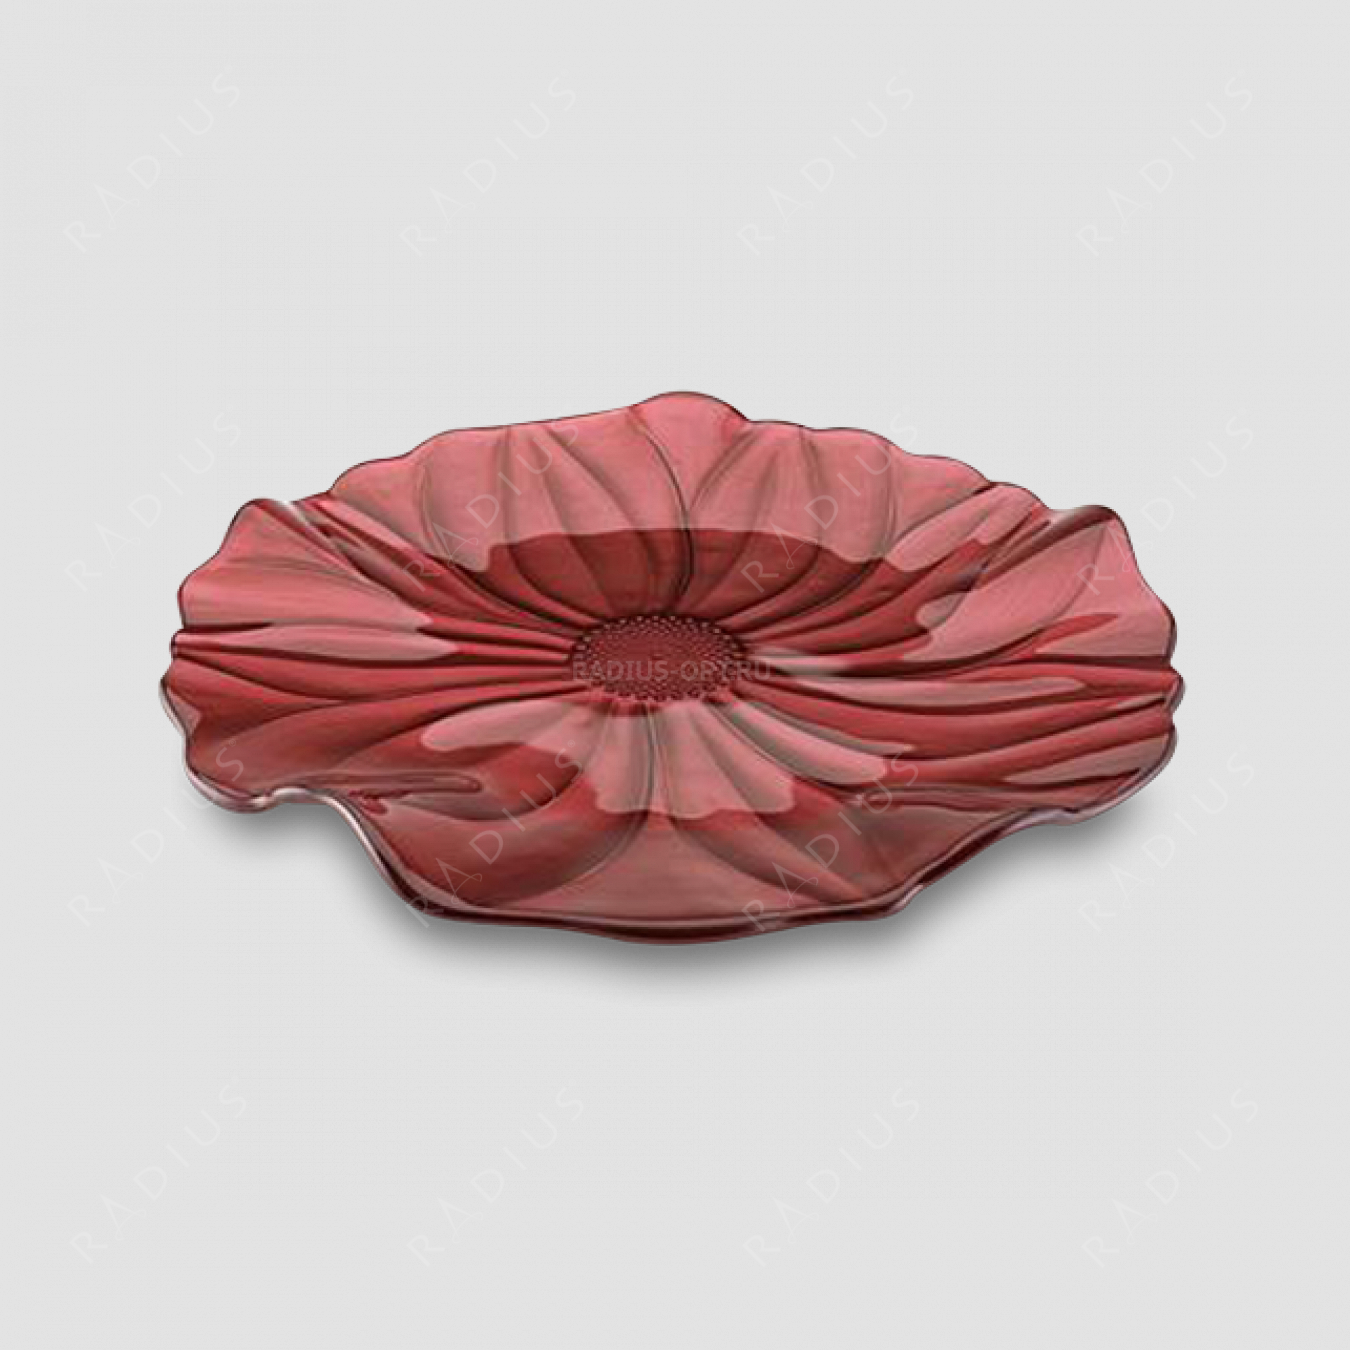 Блюдо круглое , диаметр: 37 см, высота: 3,5 см, материал: стекло, цвет: красный, серия Magnolia, IVV (Italy), Италия